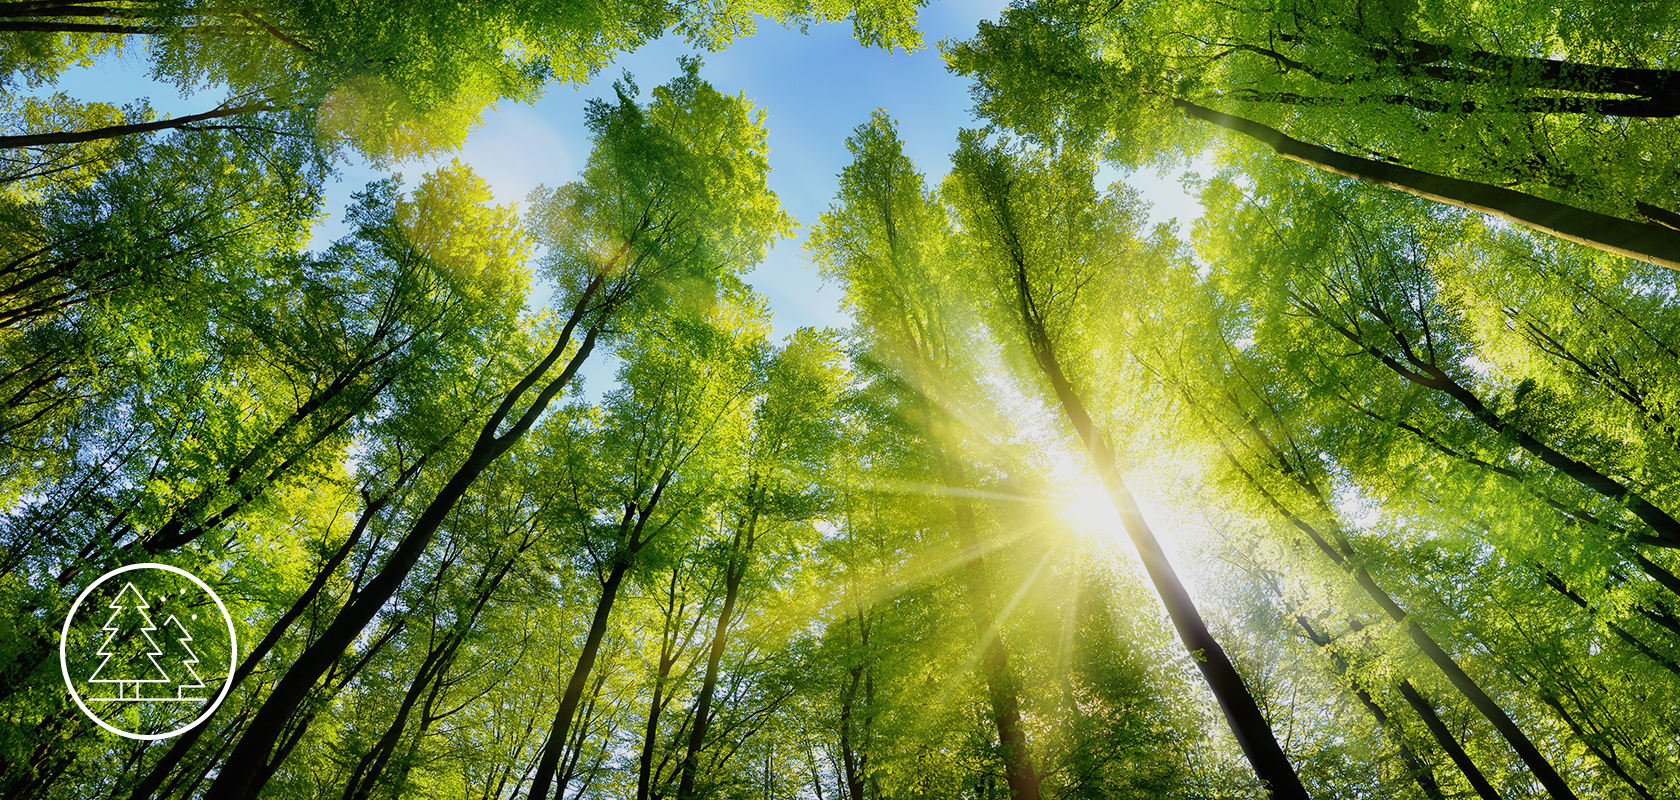 Živá lesní koruna s paprsky slunce pronikajícími skrz listy, zdůrazňující bujnou zeleň a vytvářející klidné, přírodní pozadí.